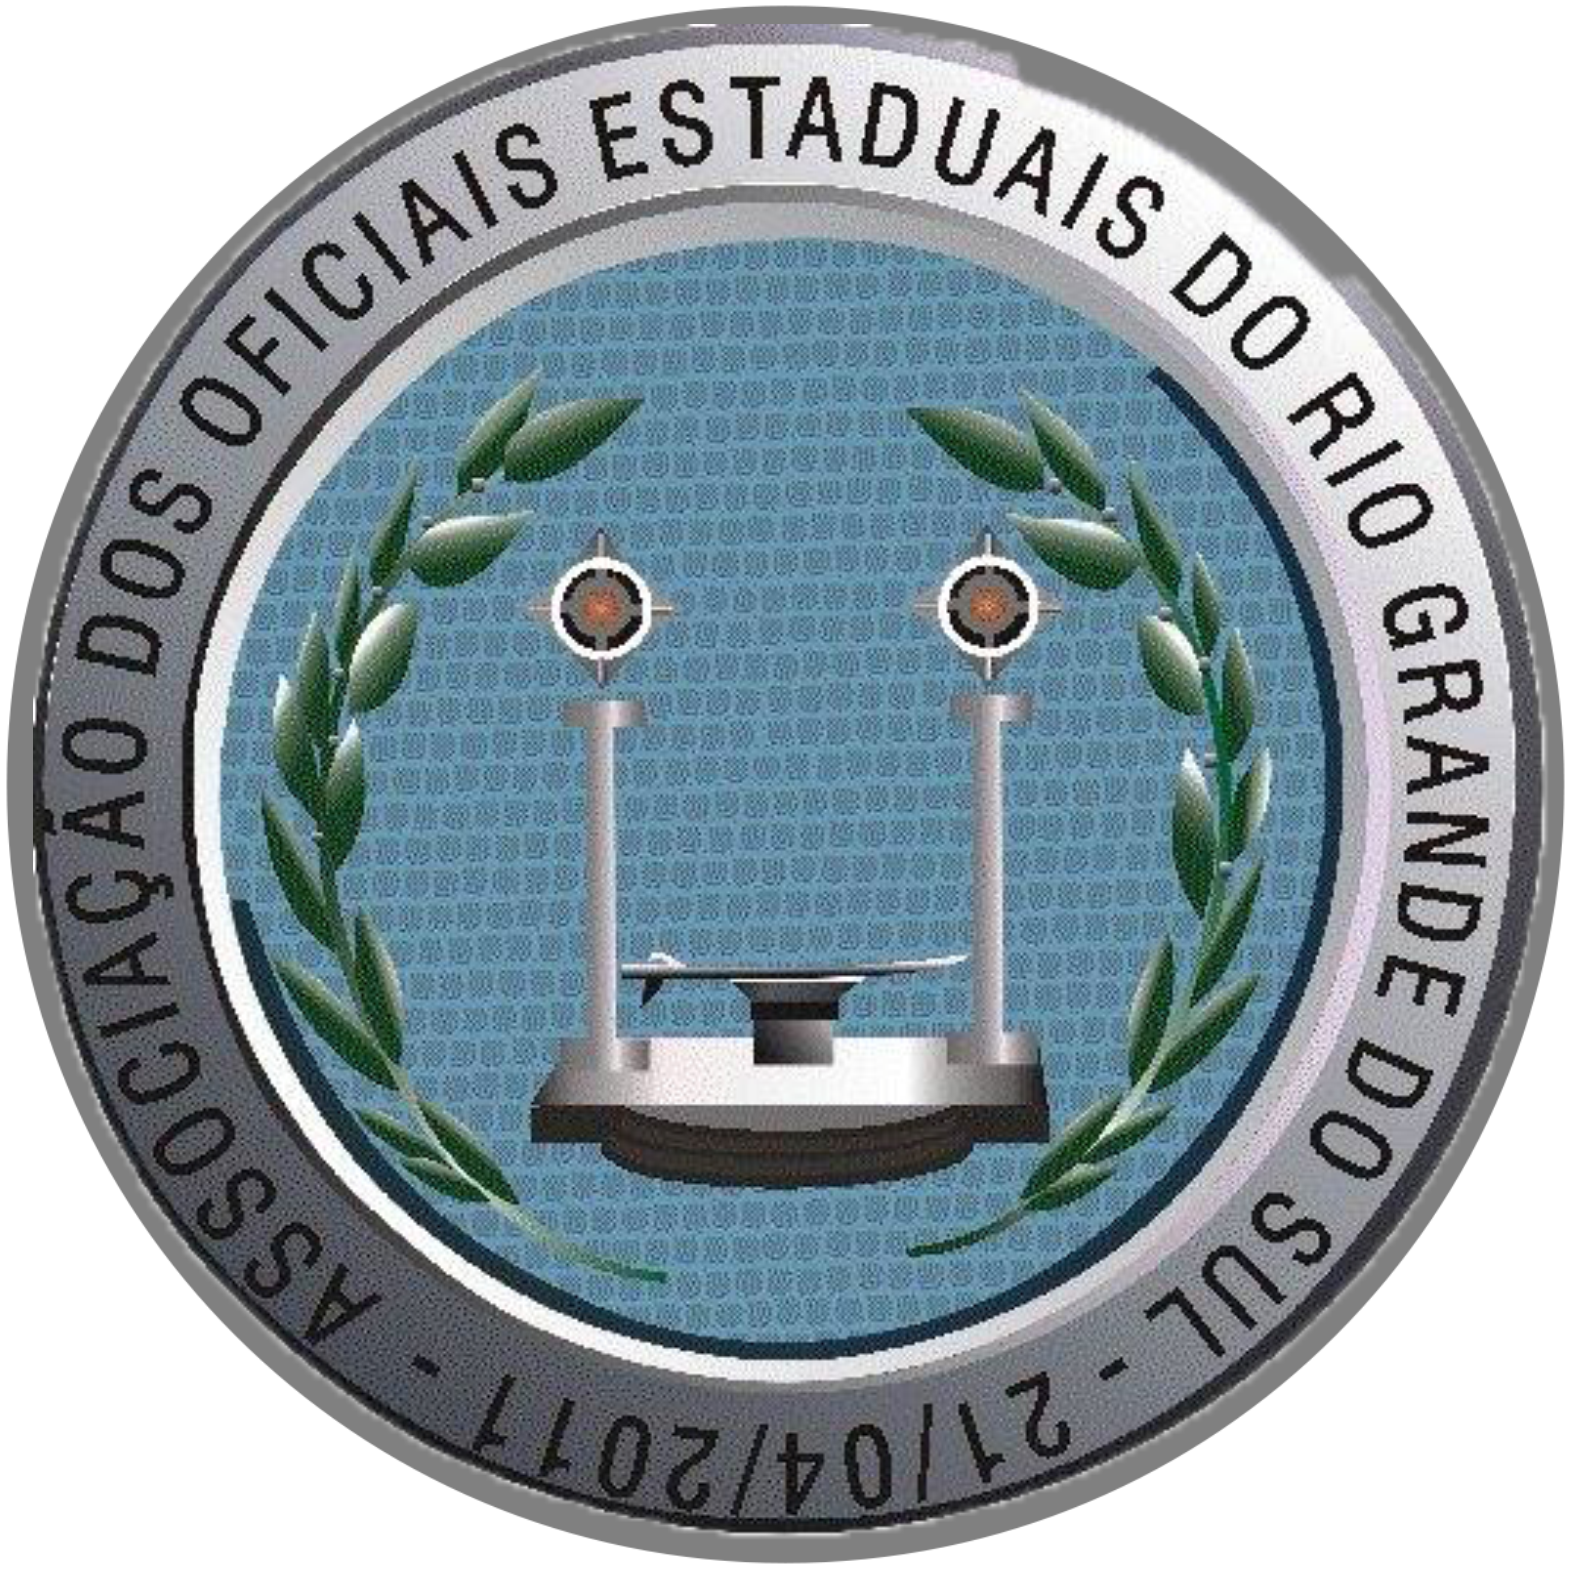 Associação dos Oficiais Estaduais do Rio Grande do Sul